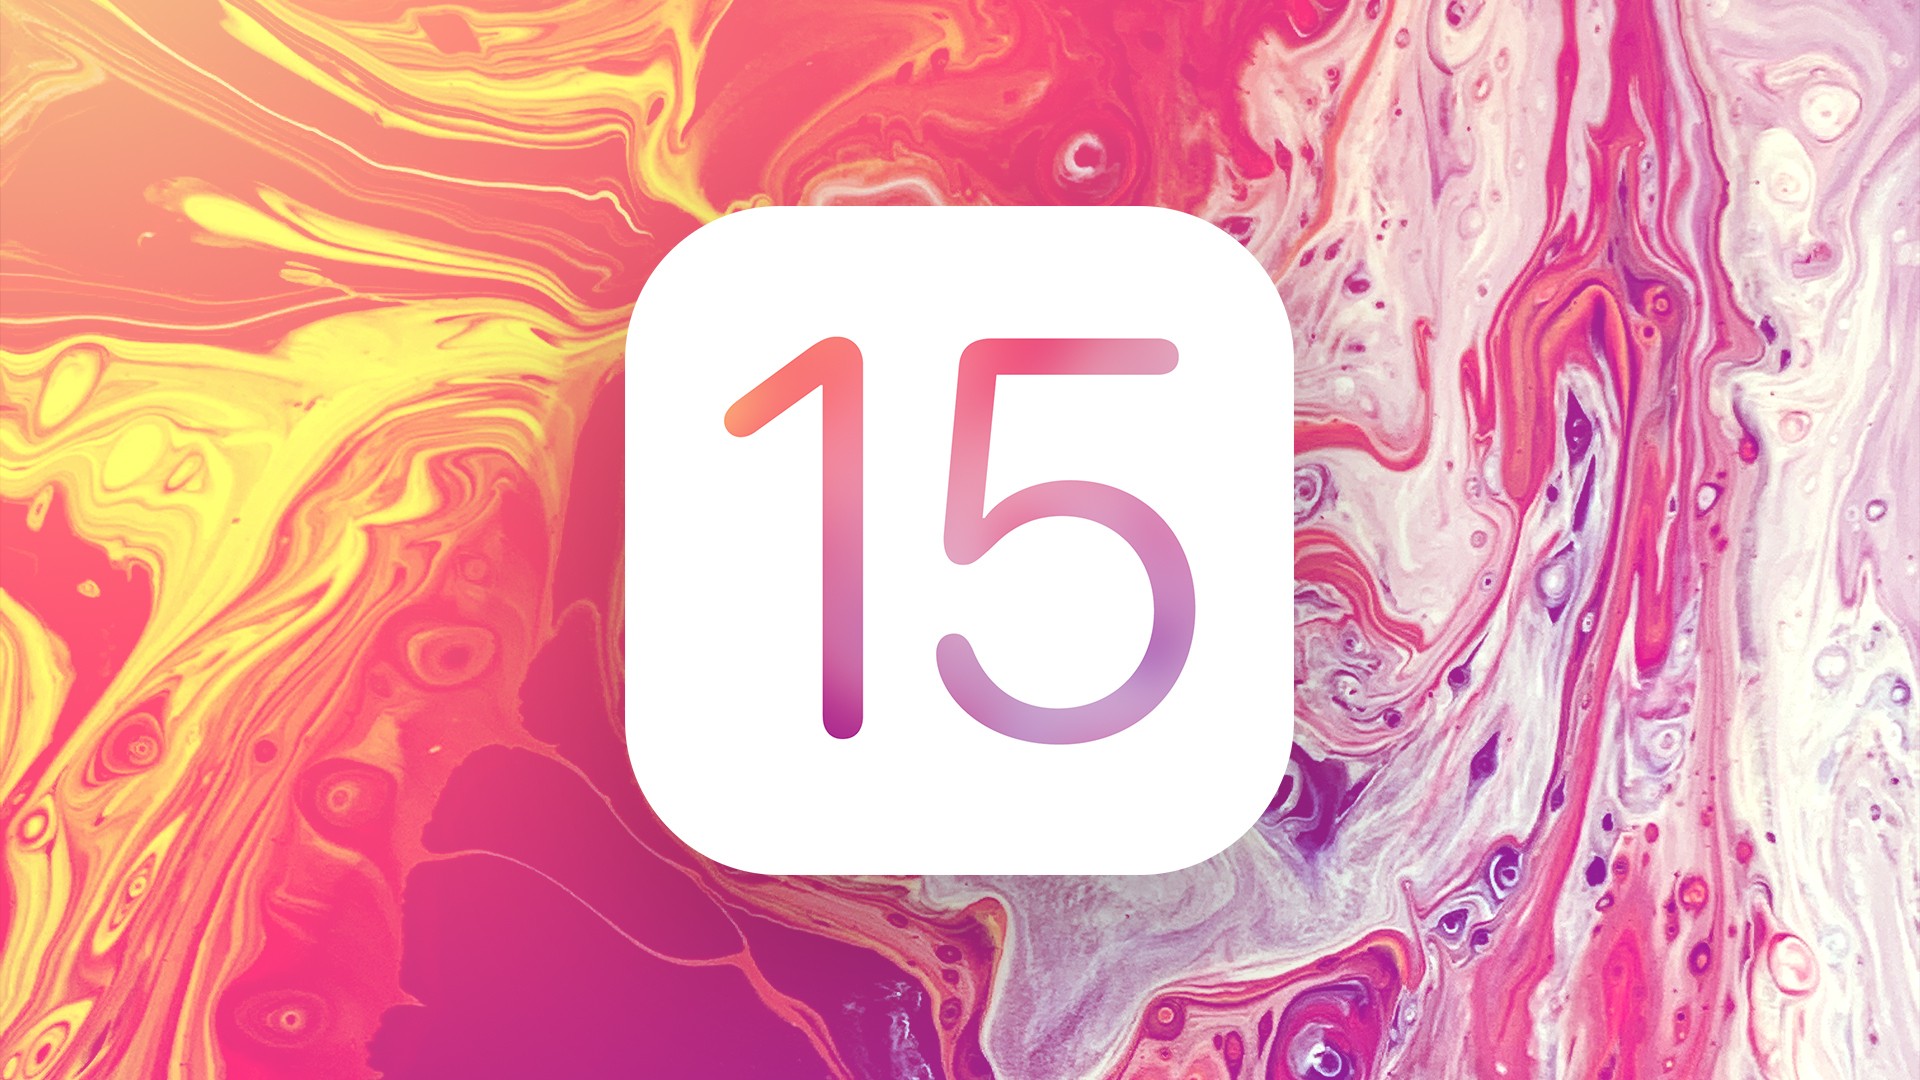 Apple relata que iOS 15 est presente em 72% dos iPhones introduzidos nos ltimos quatro anos